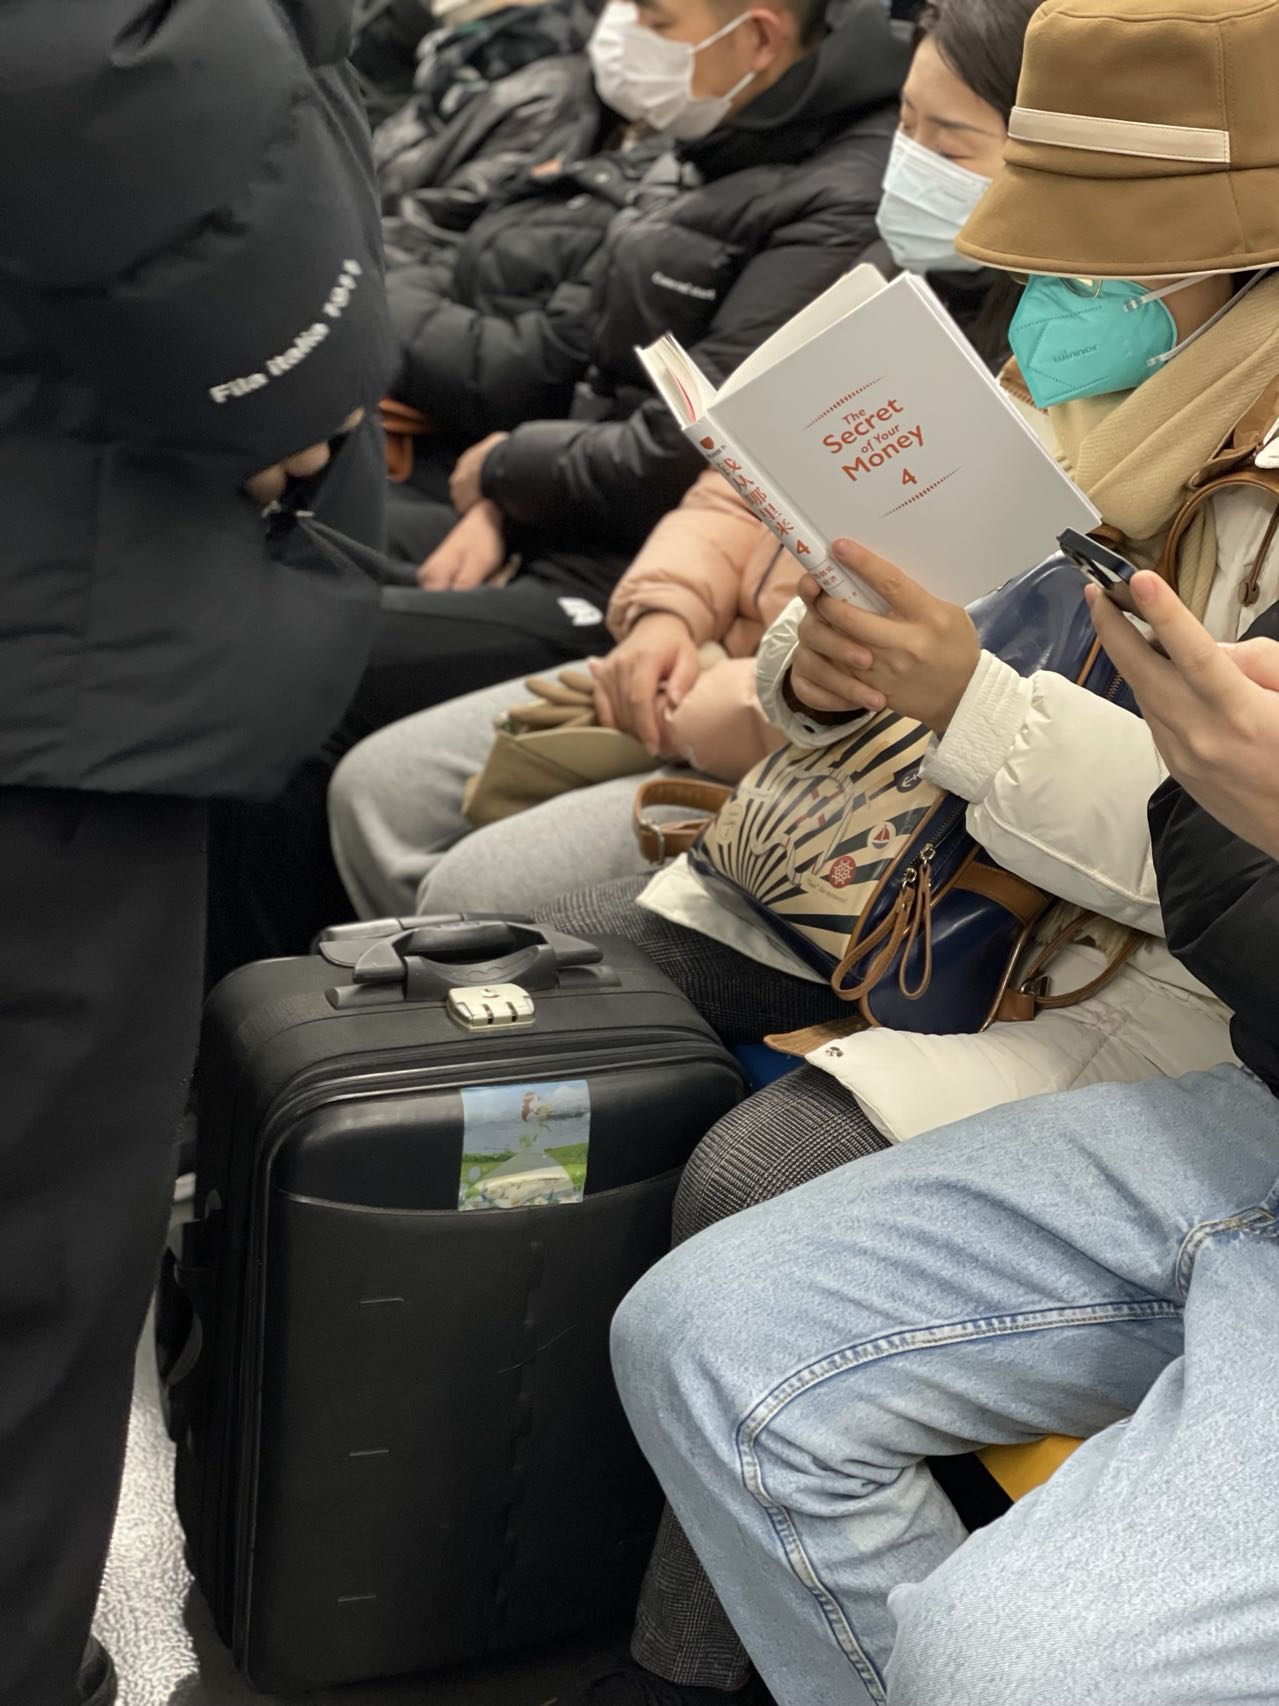 美国人在地铁上看书而中国人在玩手机是因为美国地铁没有网络吗？ - 知乎